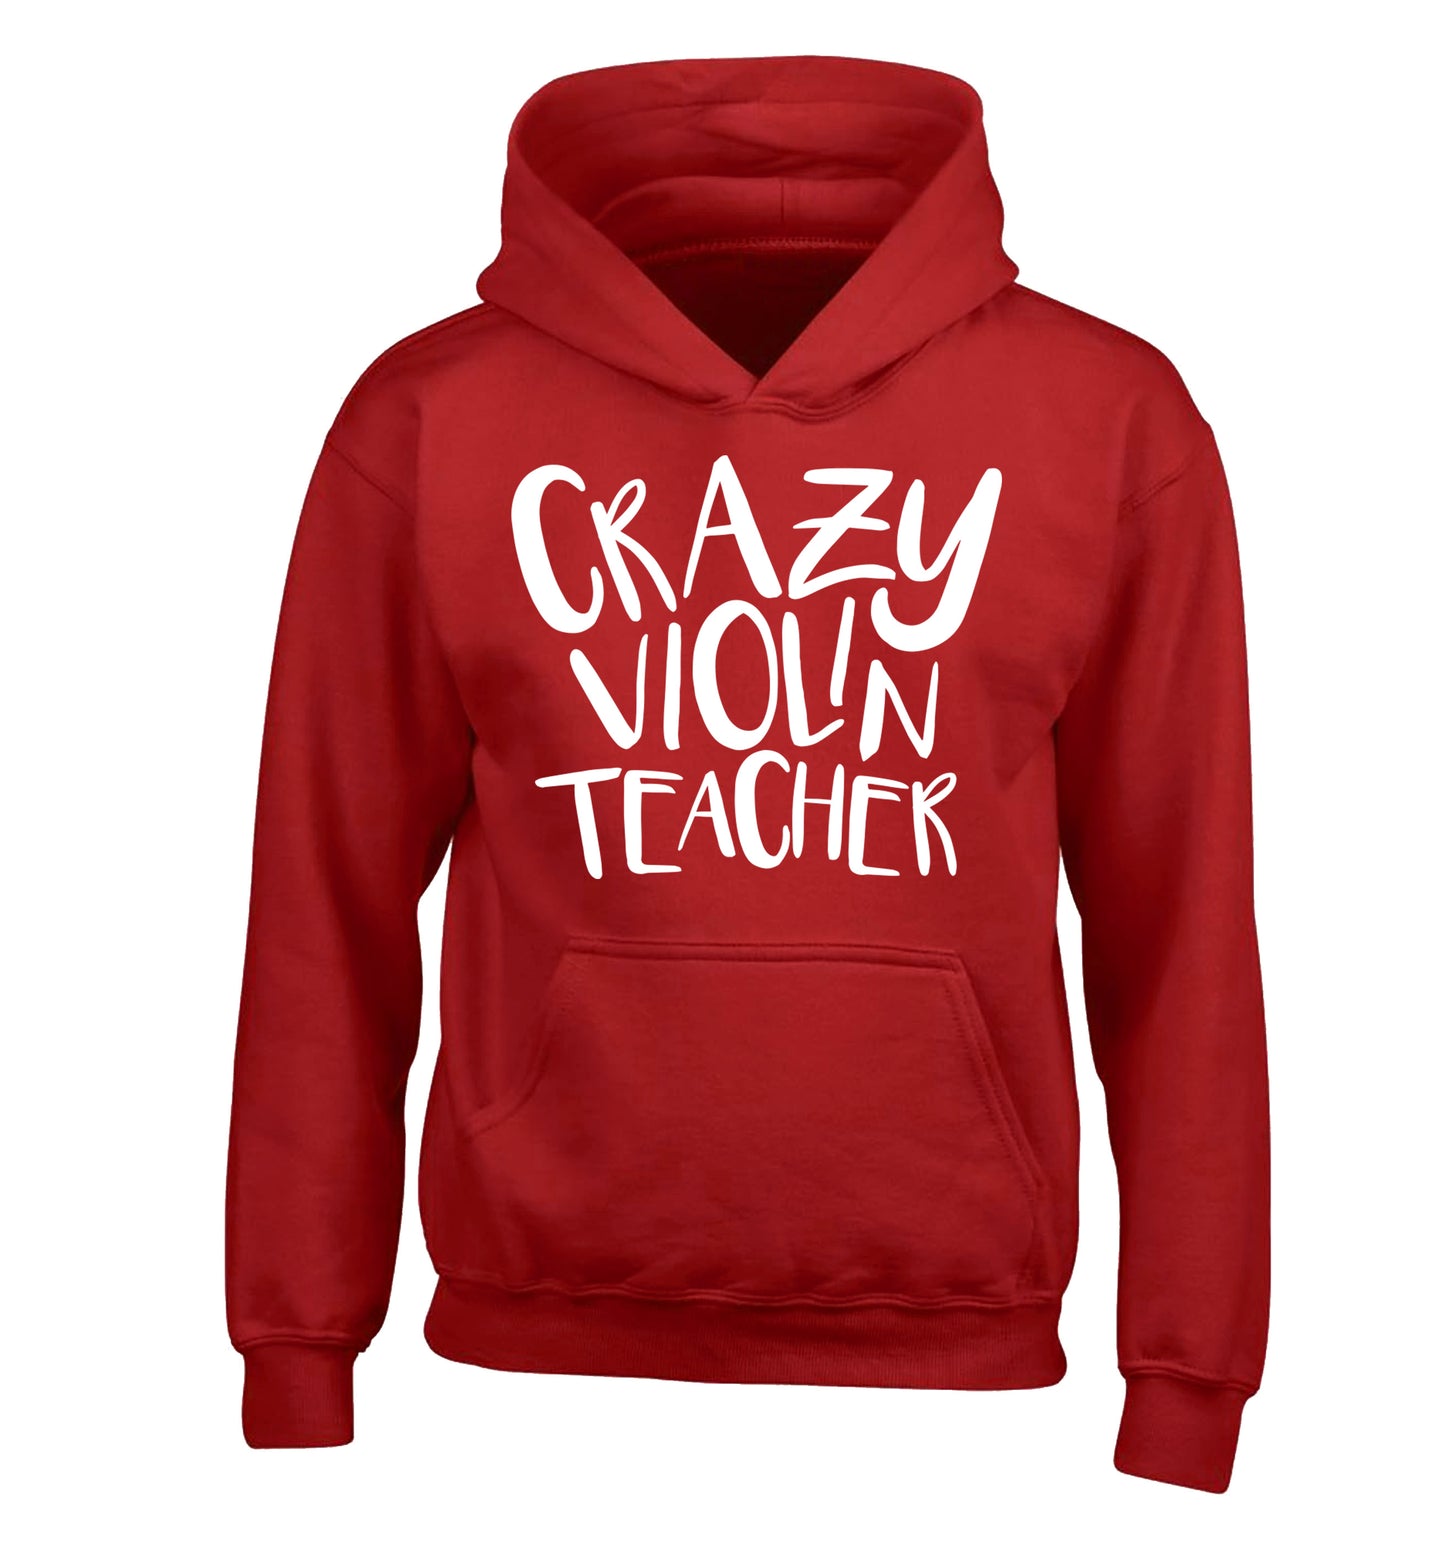 Crazy violin teacher children's red hoodie 12-13 Years